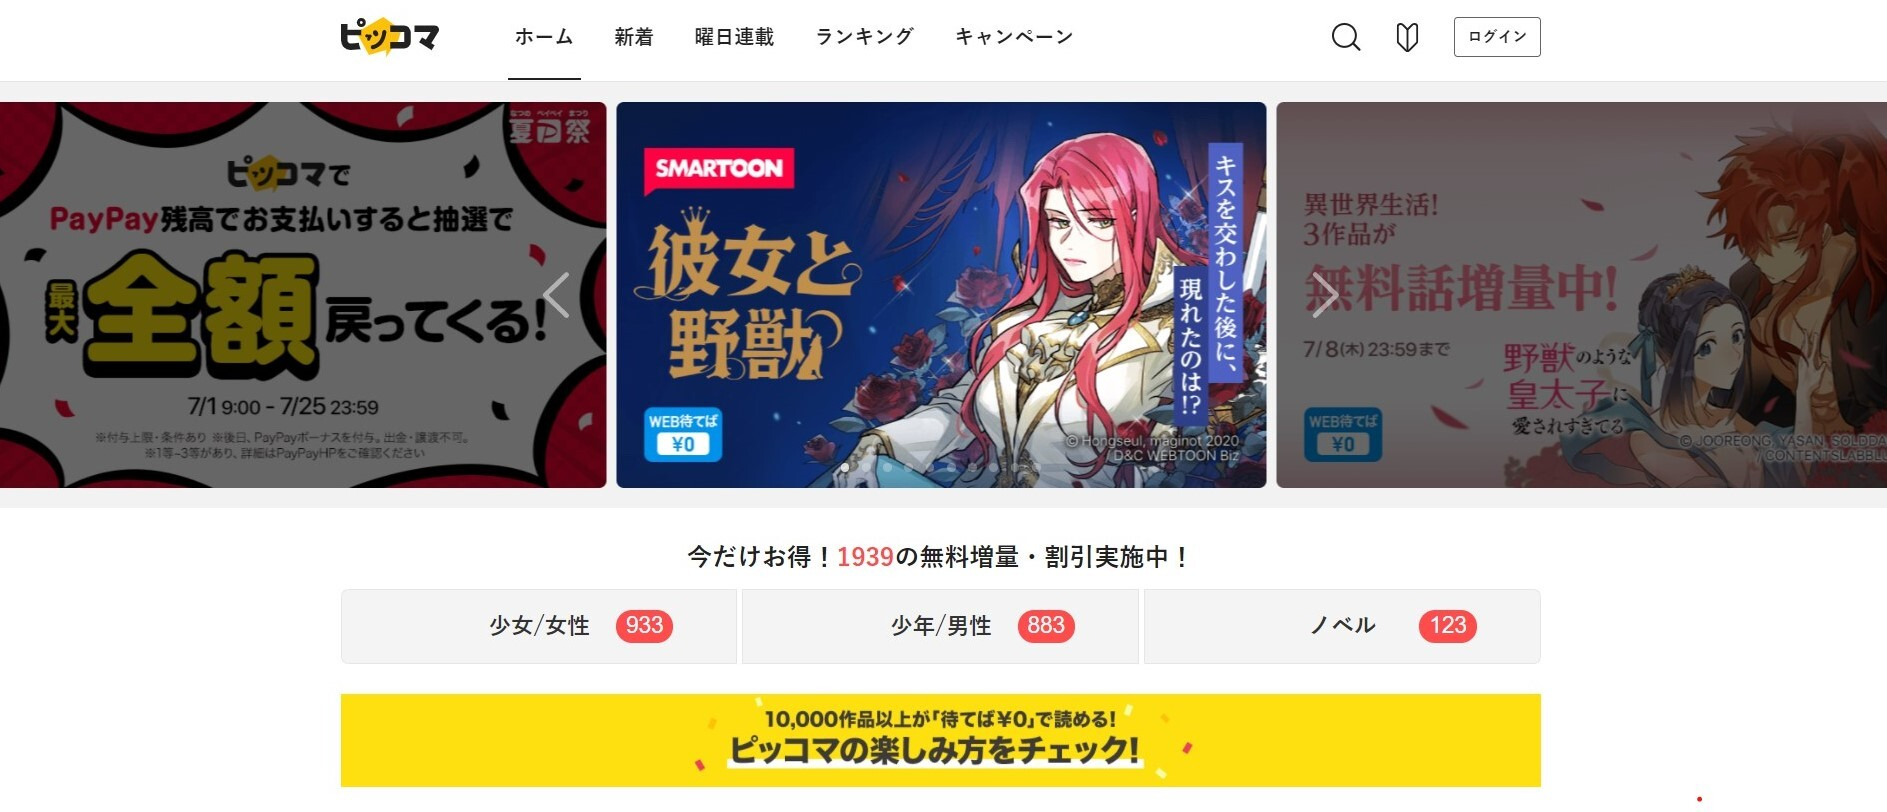 카카오 '픽코마'는 지난 2020년부터 일본에서 네이버 '라인망가'를 제치고 웹툰 부문 매출 1위에 올랐다. 